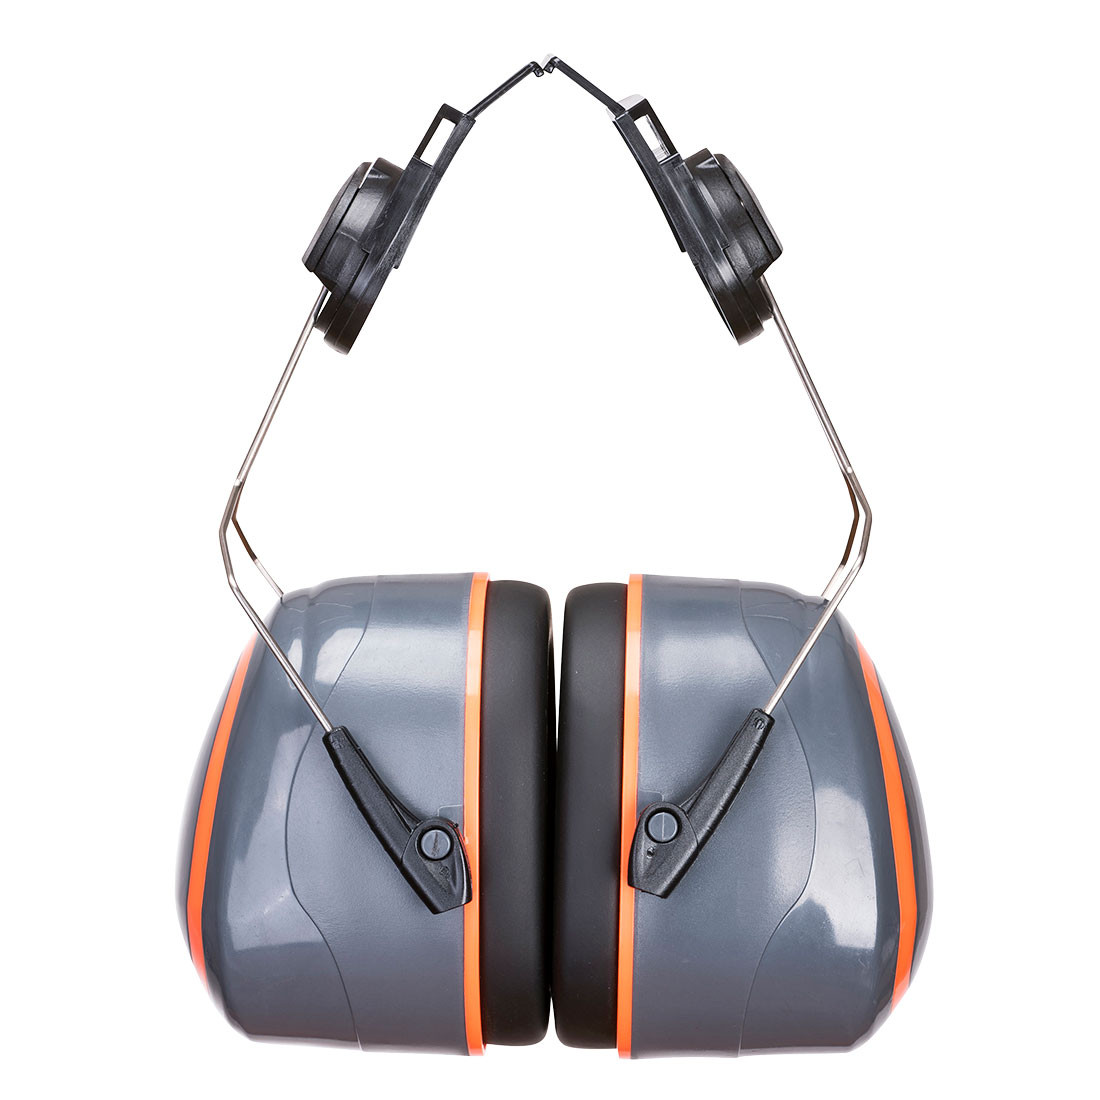 Coquilles anti-bruit HV Extreme monté sur casque - Les équipements de protection individuelle